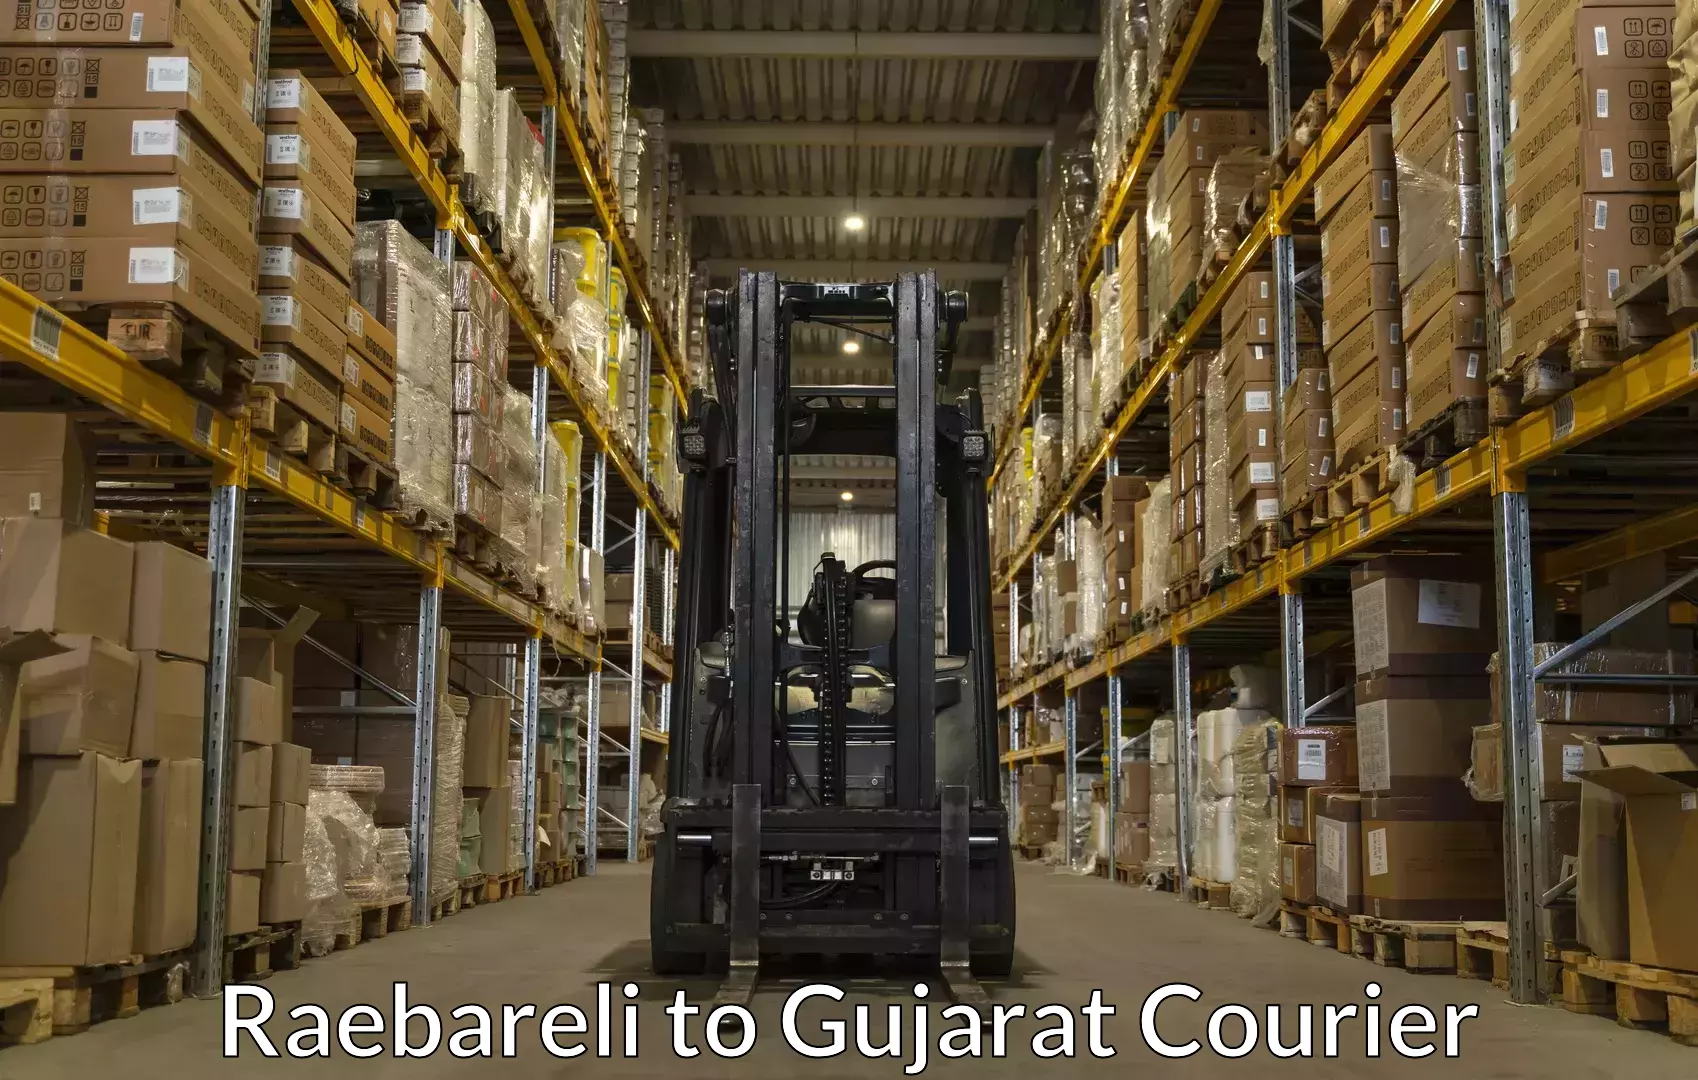 Luggage delivery providers Raebareli to Gujarat